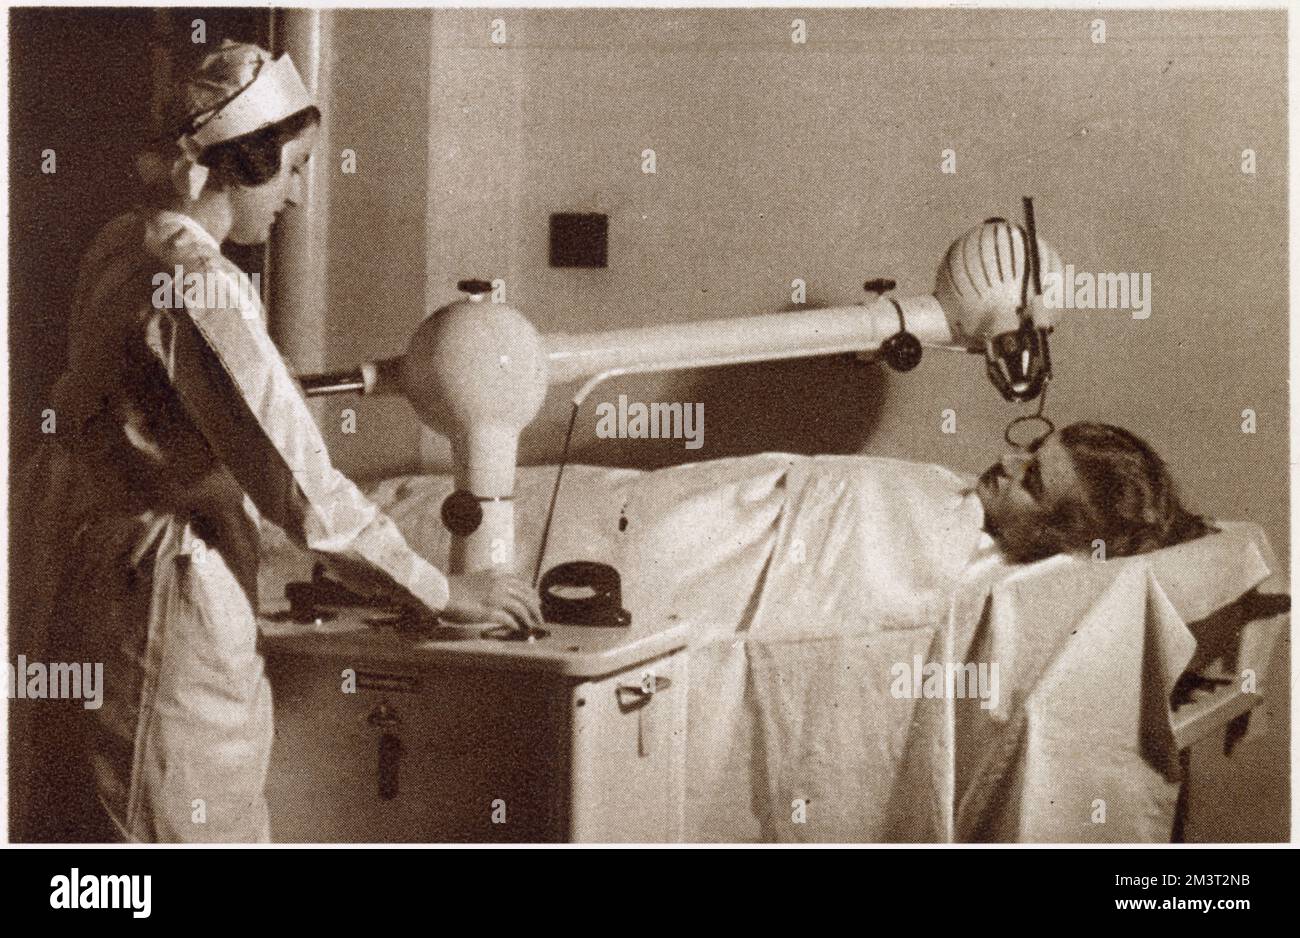 Una cura per gli imperfezioni facciali: L'apparecchio Siemens-Reiniger, trattamento con raggi X per aiutare con qualsiasi cosa, da una verruca minuscola a una malattia della pelle diffusa. Data: 1933 Foto Stock